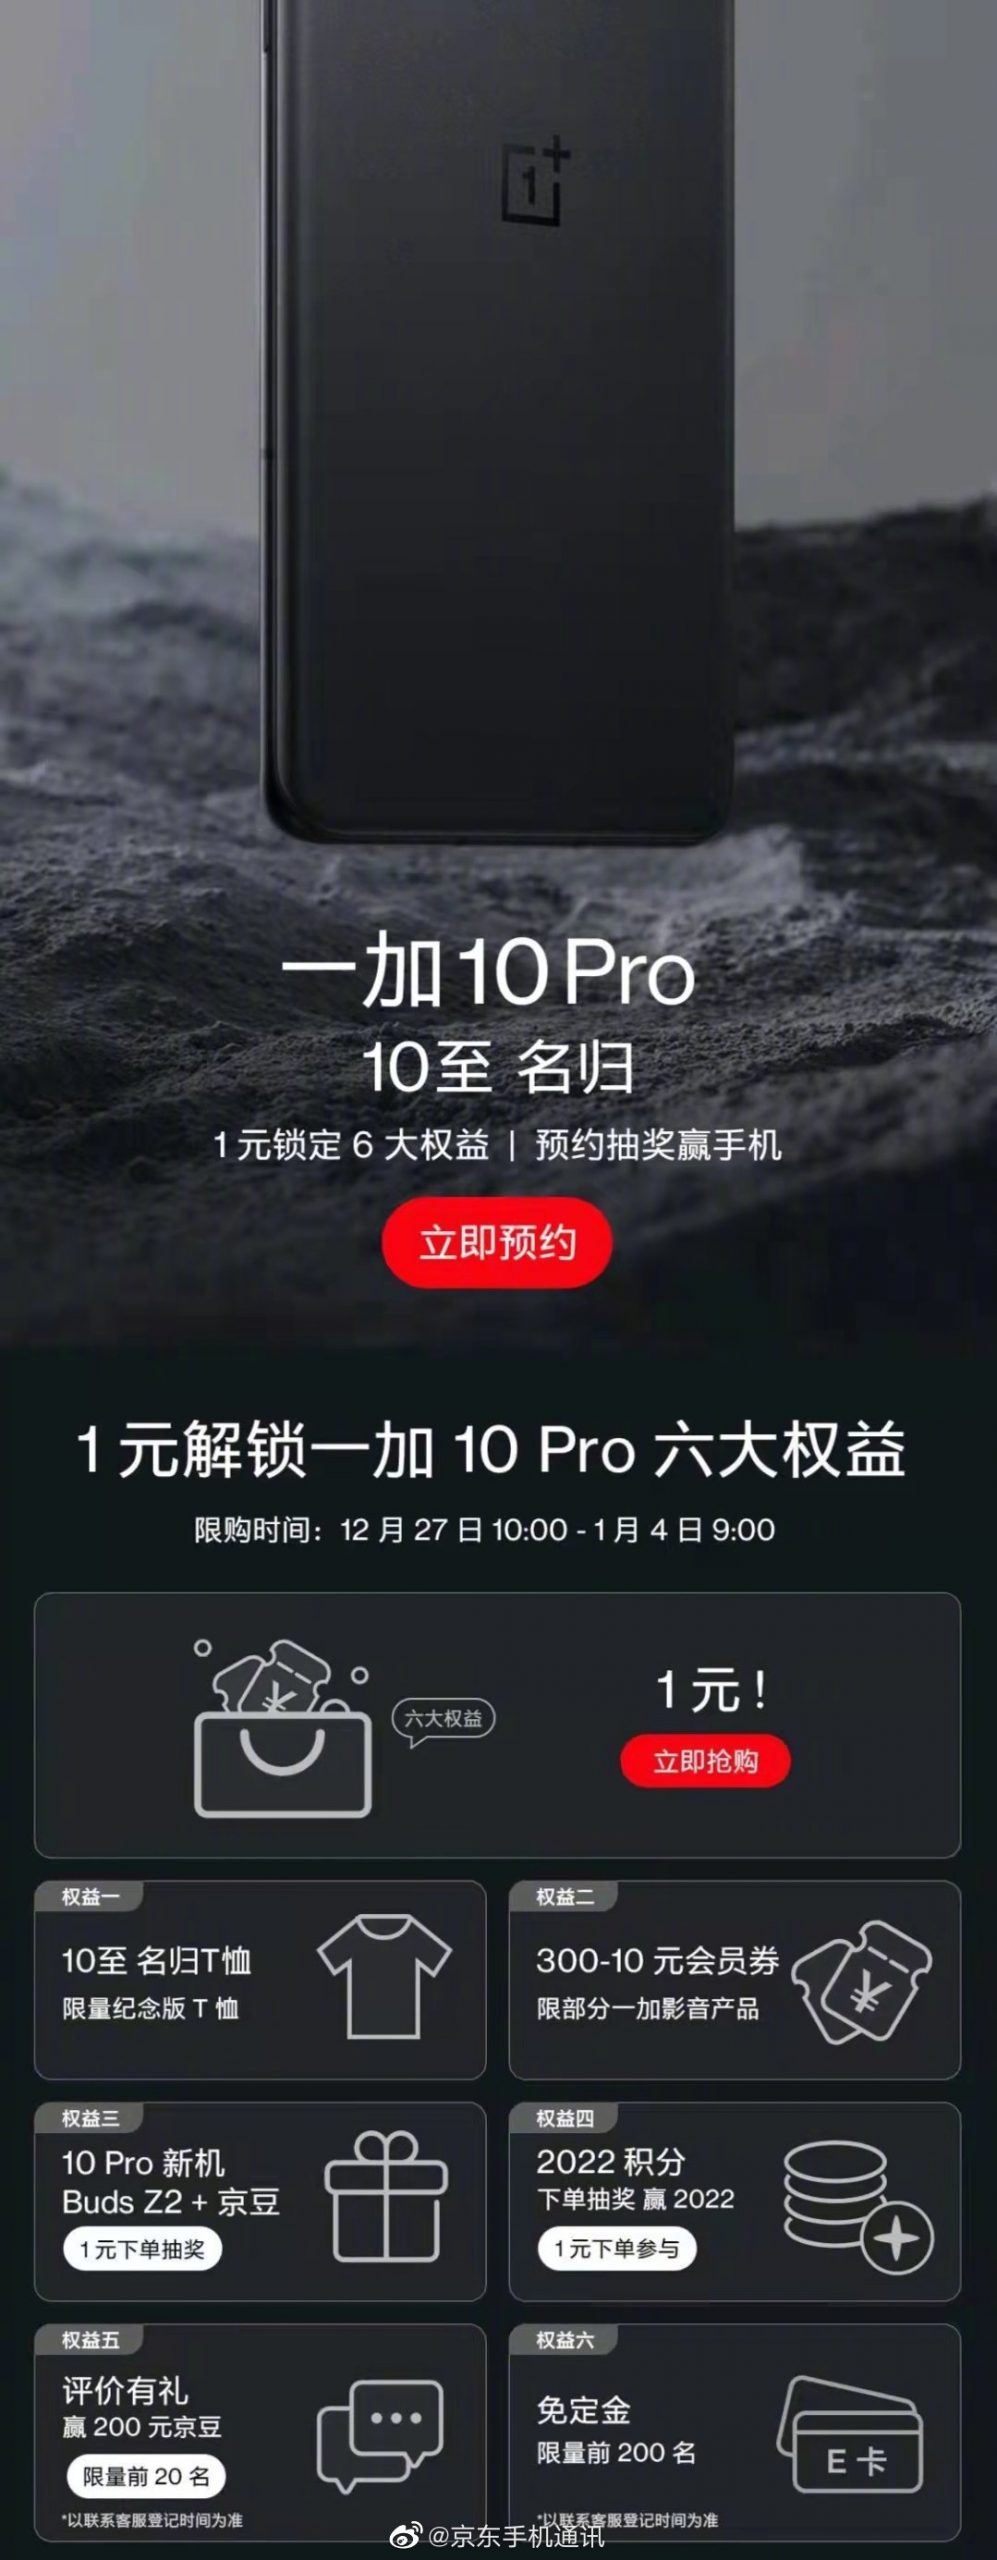 kiedy premiera OnePlus 10 Pro cena rezerwacja